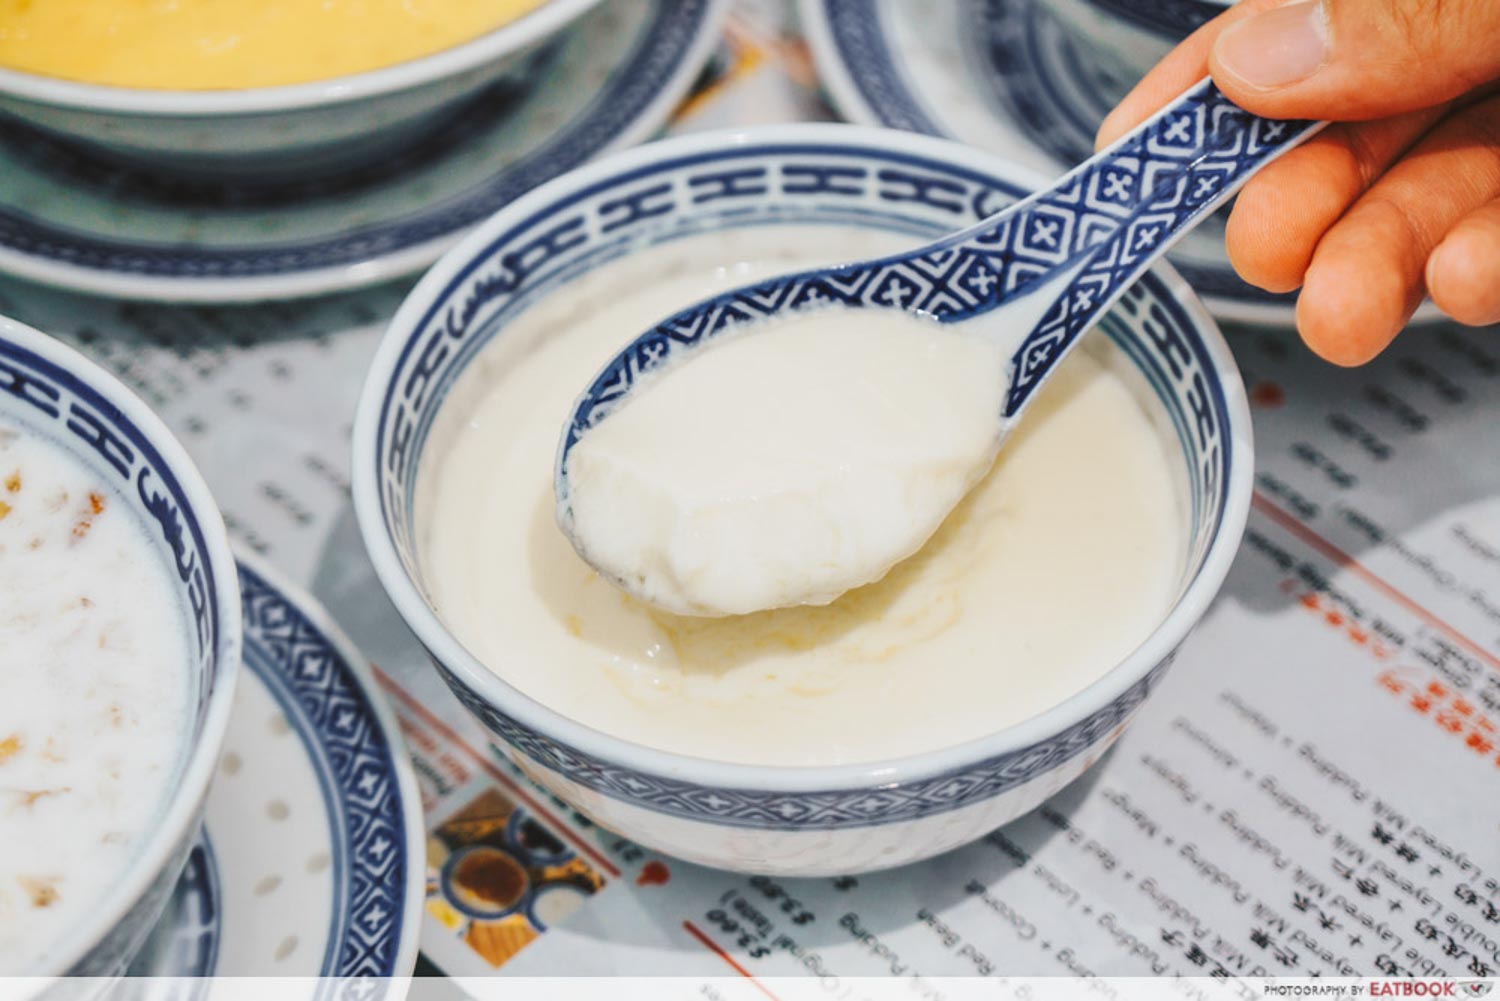 Jin Yu Man Tang Dessert Shop - Ginger Milk Pudding Pouring